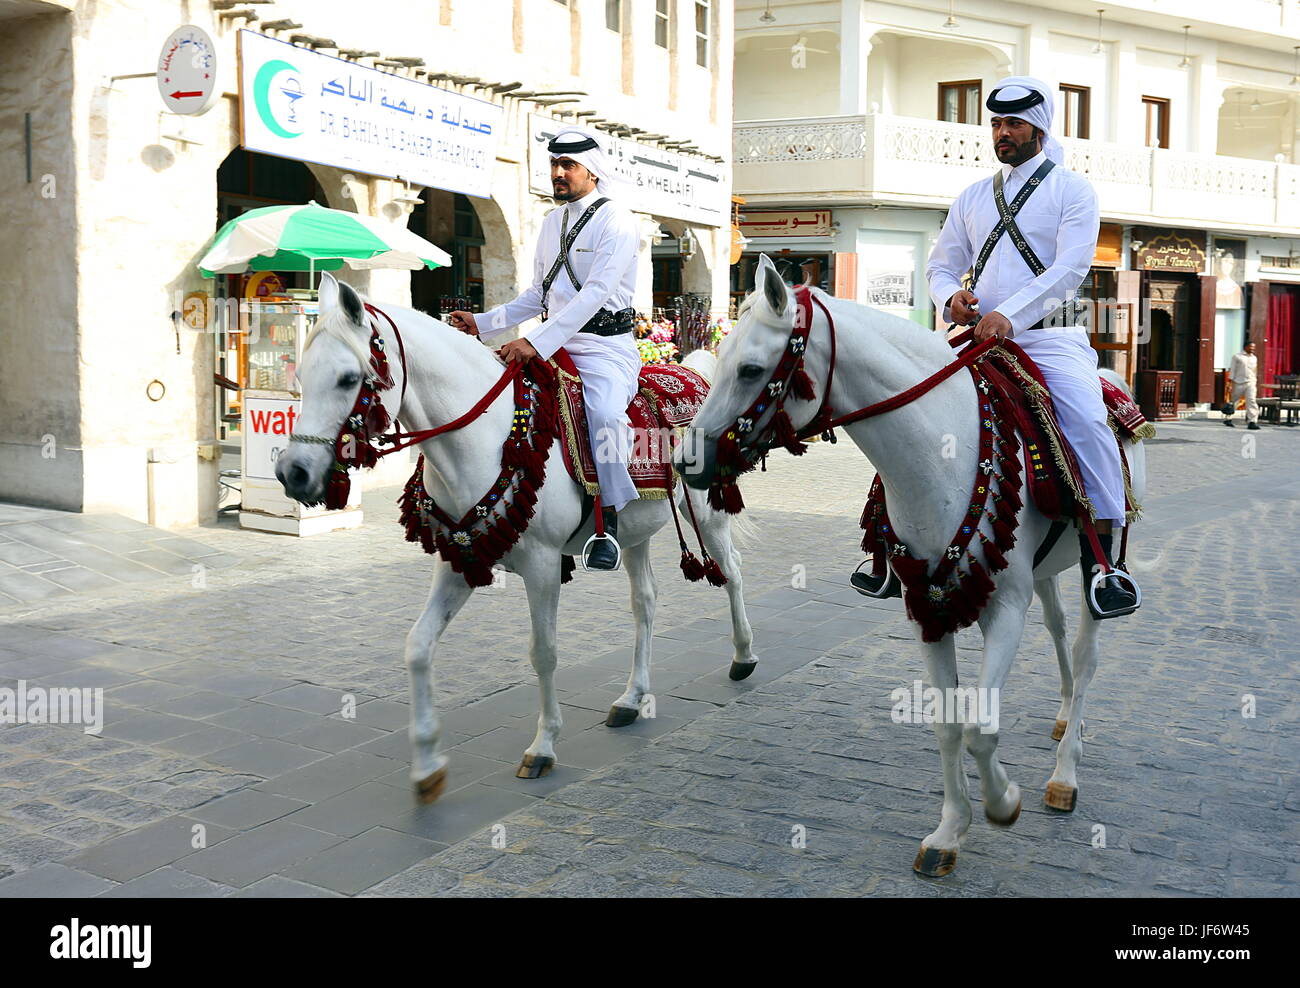 DOHA, QATAR - Abril 9, 2017: la policía montada patrulla el souq Waqif mercado en el centro de Doha principalmente como un espectáculo cultural para turistas Foto de stock